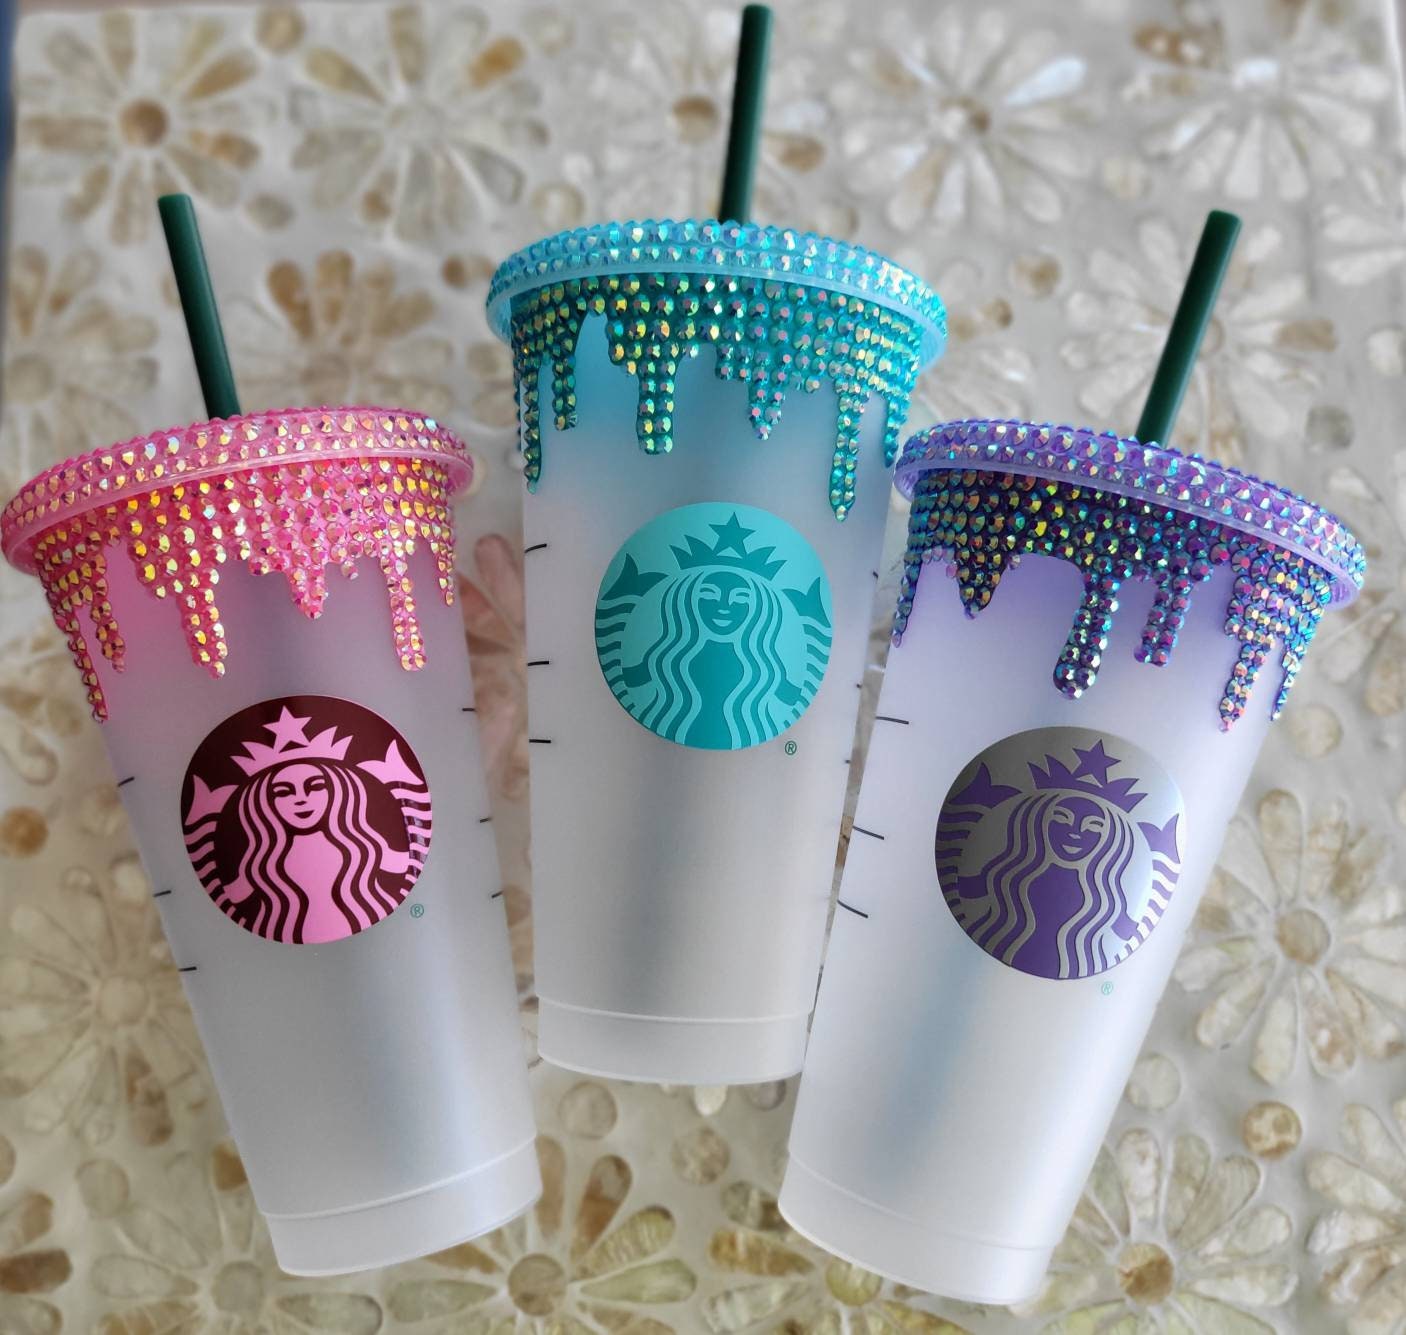 Starbucks 591ml/20oz Polar Bear Plastic Cup with Chain Sleeve